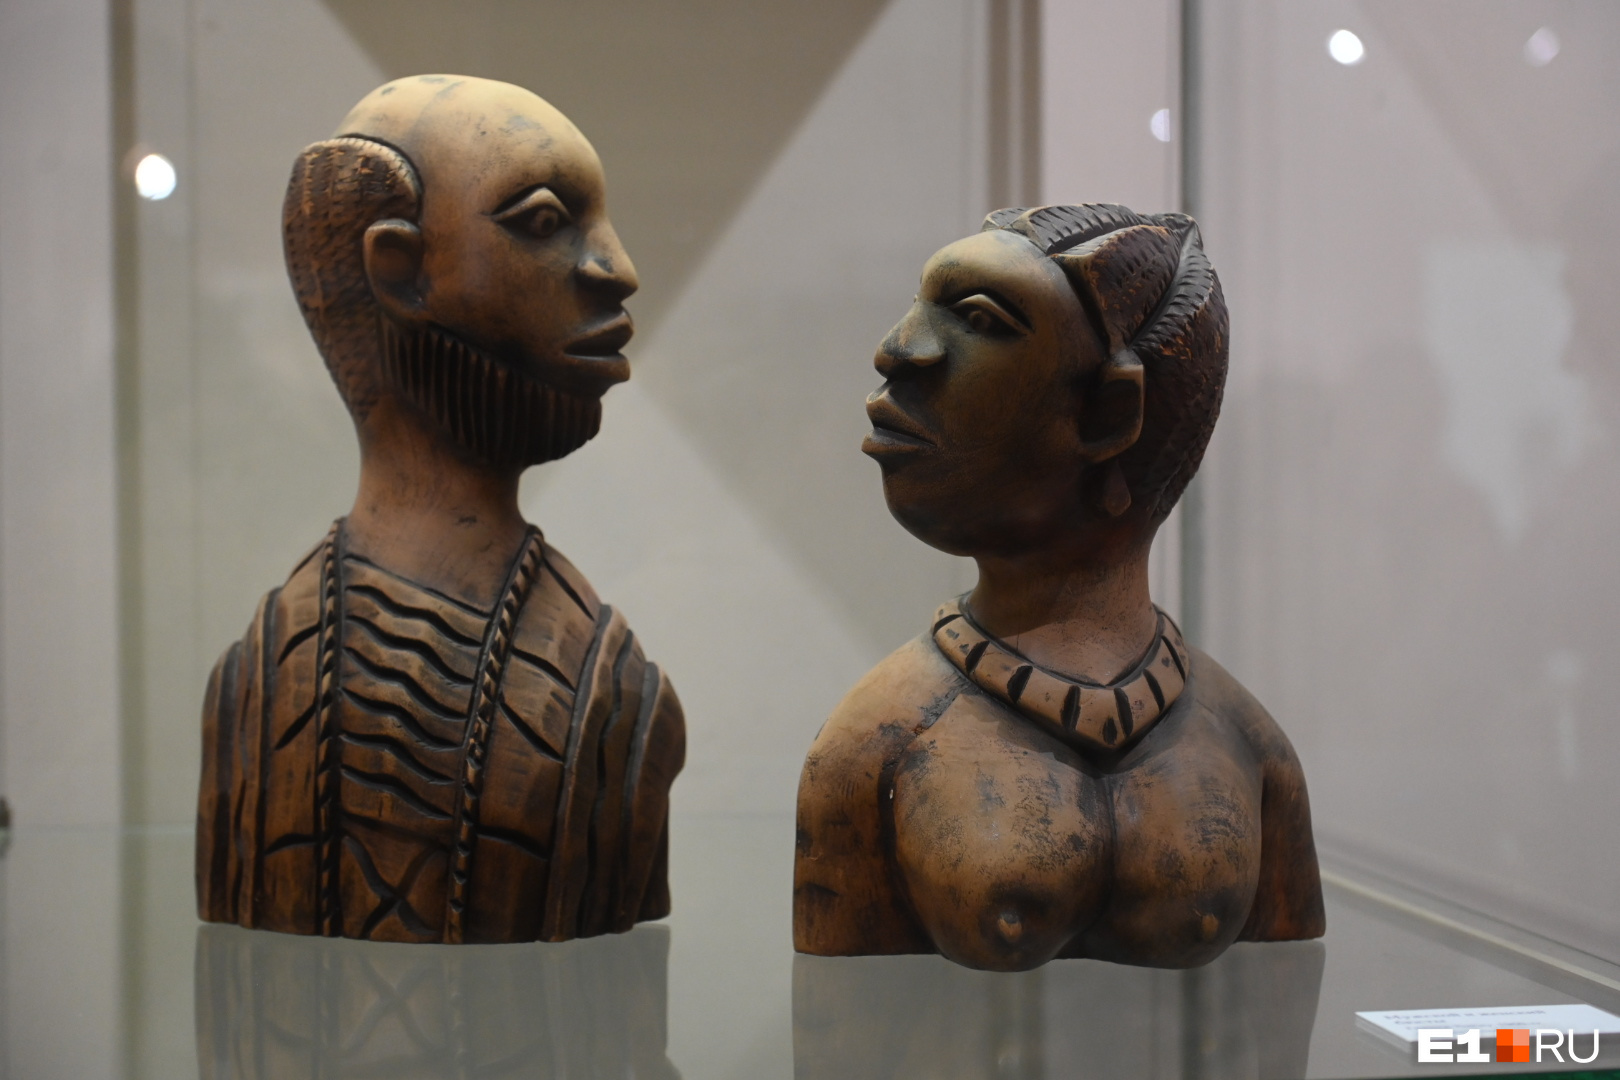 В Екатеринбурге показали старинные маски из Африки. Некоторым из них 500 лет